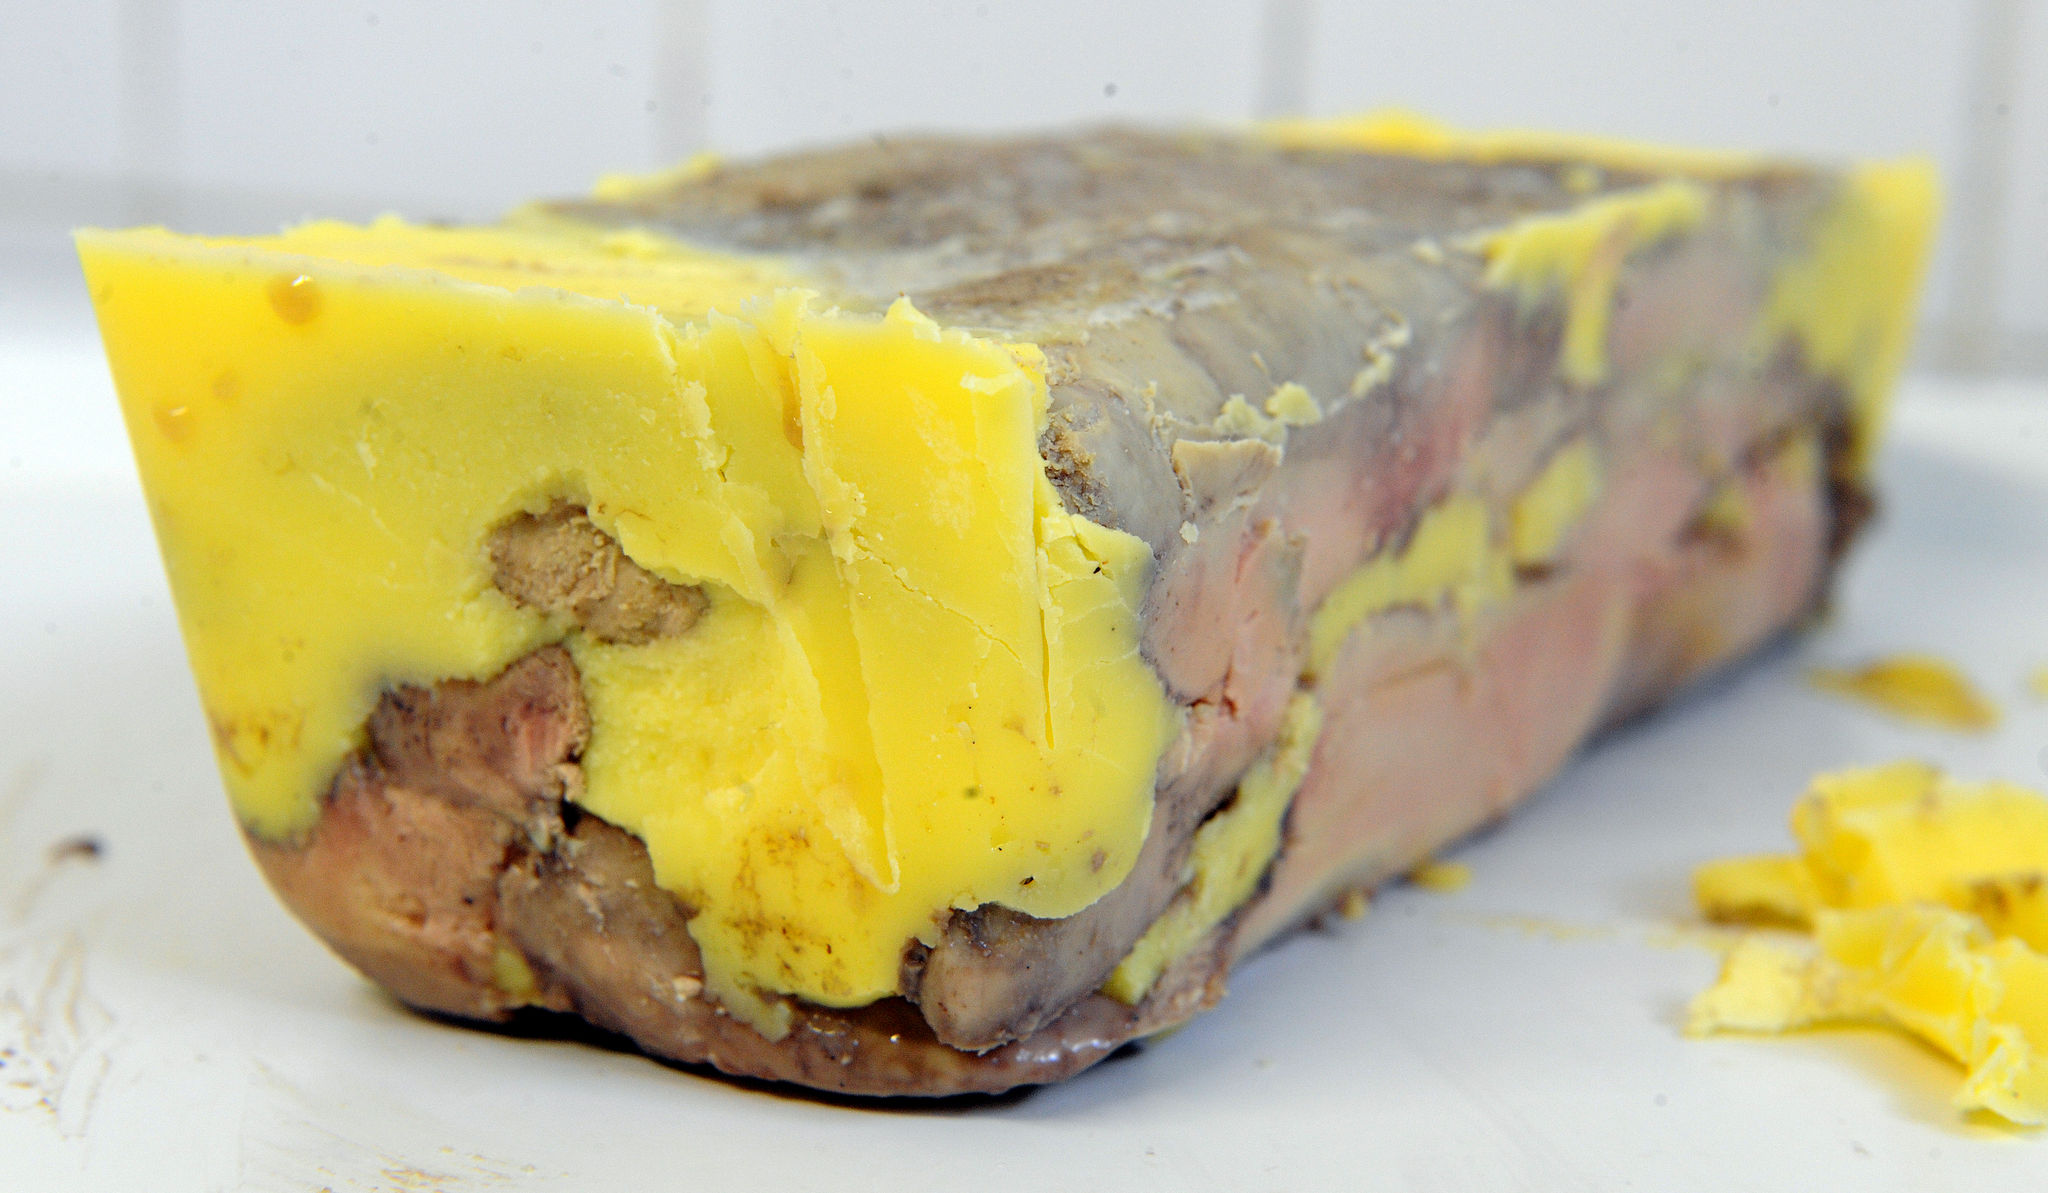 Peut-on manger du foie gras sans culpabiliser? Tout dépend à qui on demande